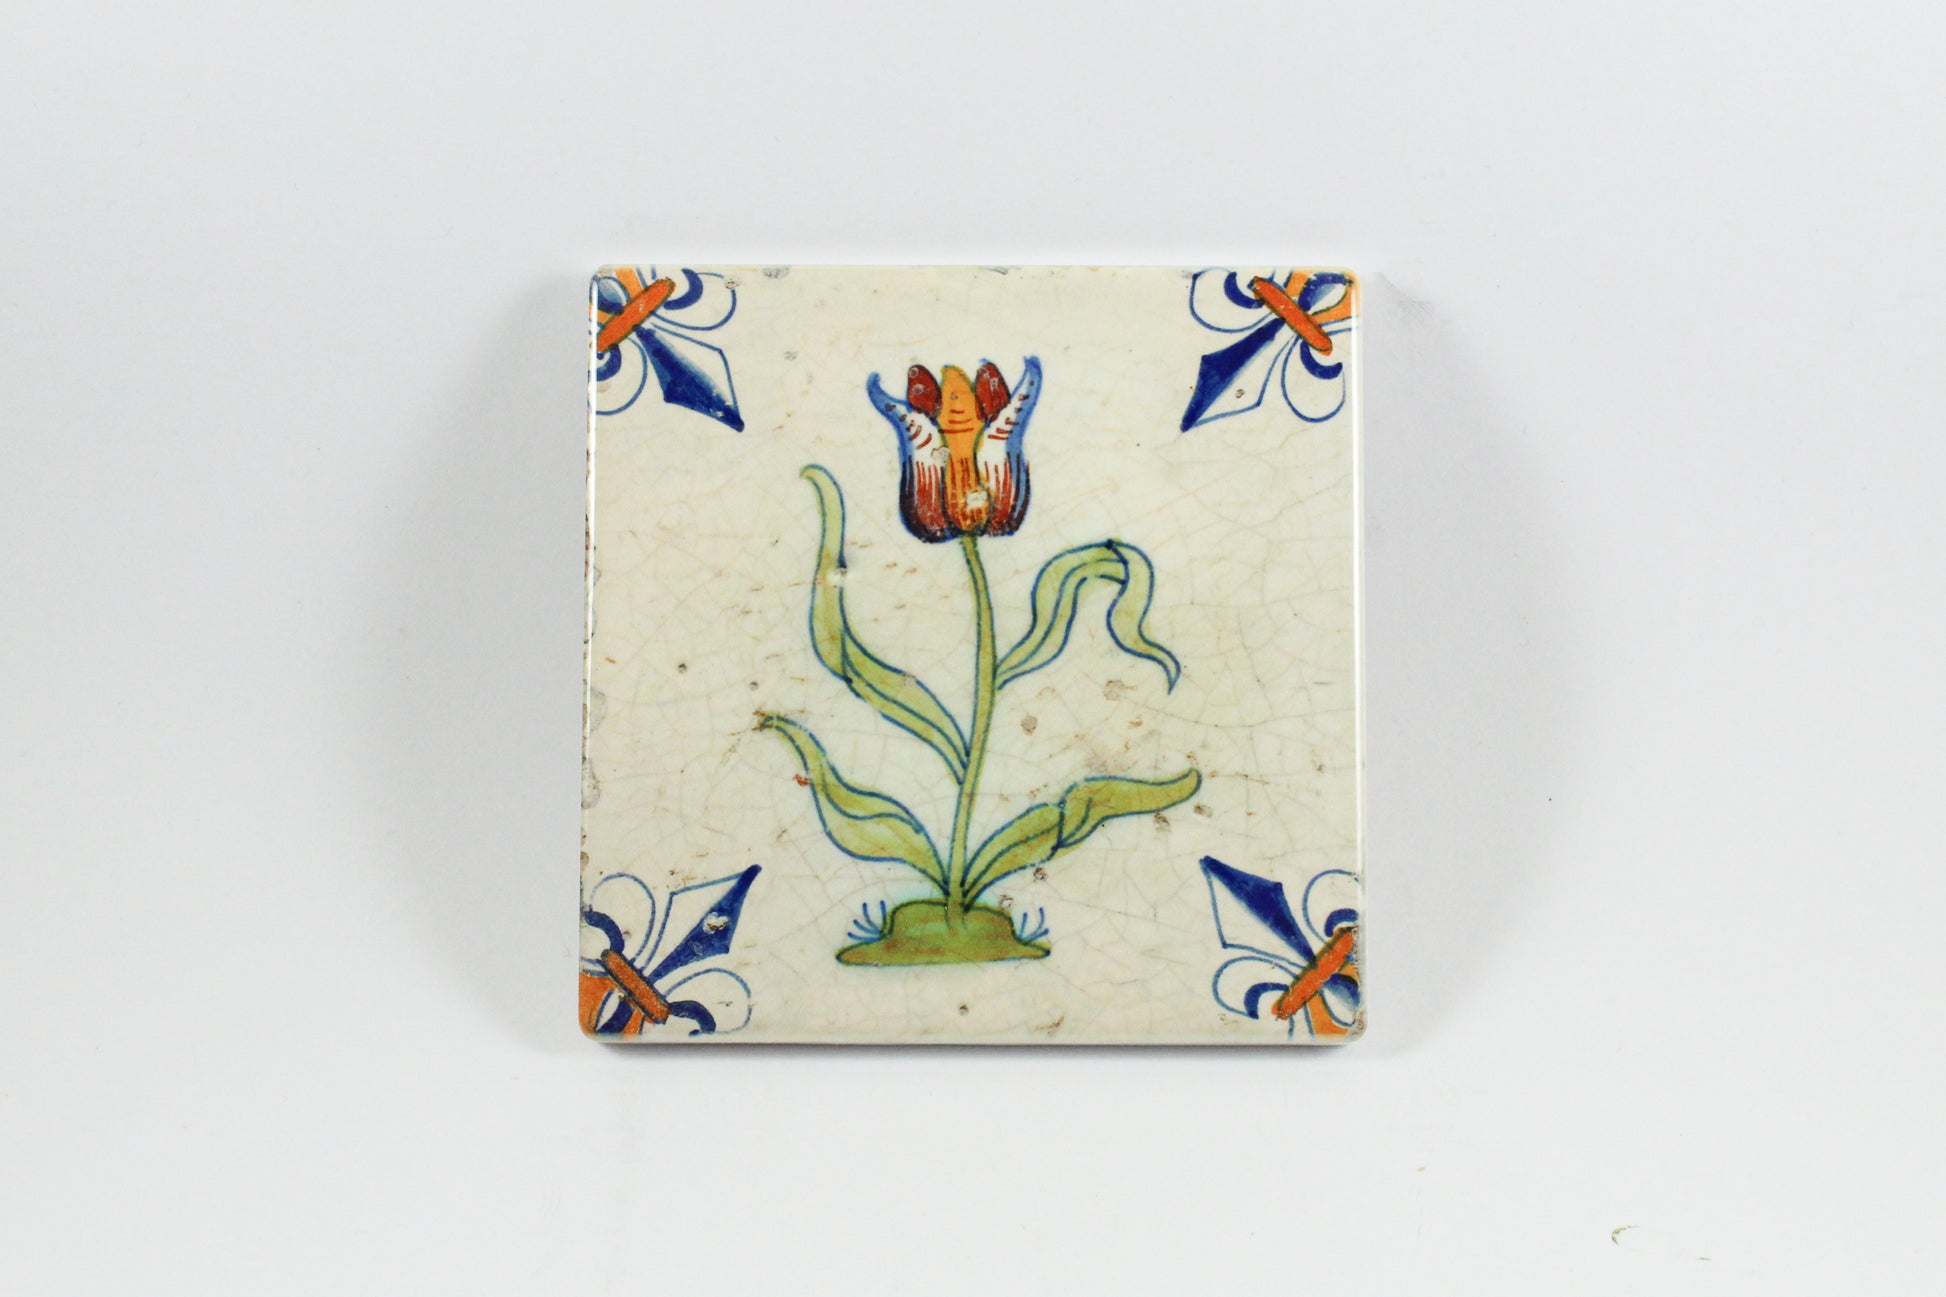 Amsterdam Tulip Museum Single Tulip Old Dutch Ceramic Tile